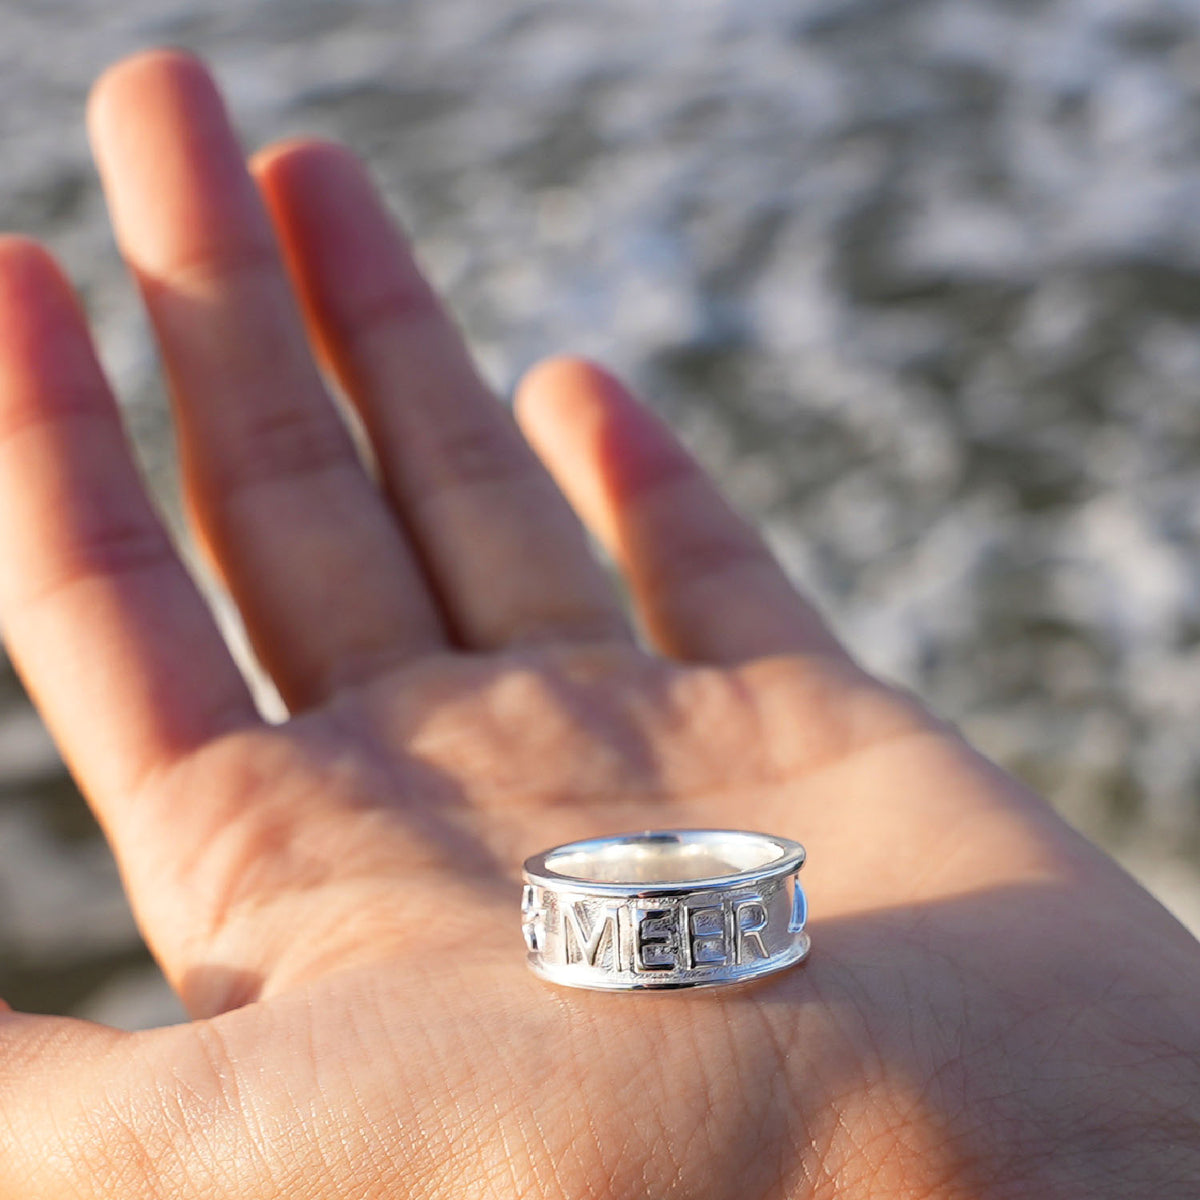 Beach Ring - silver